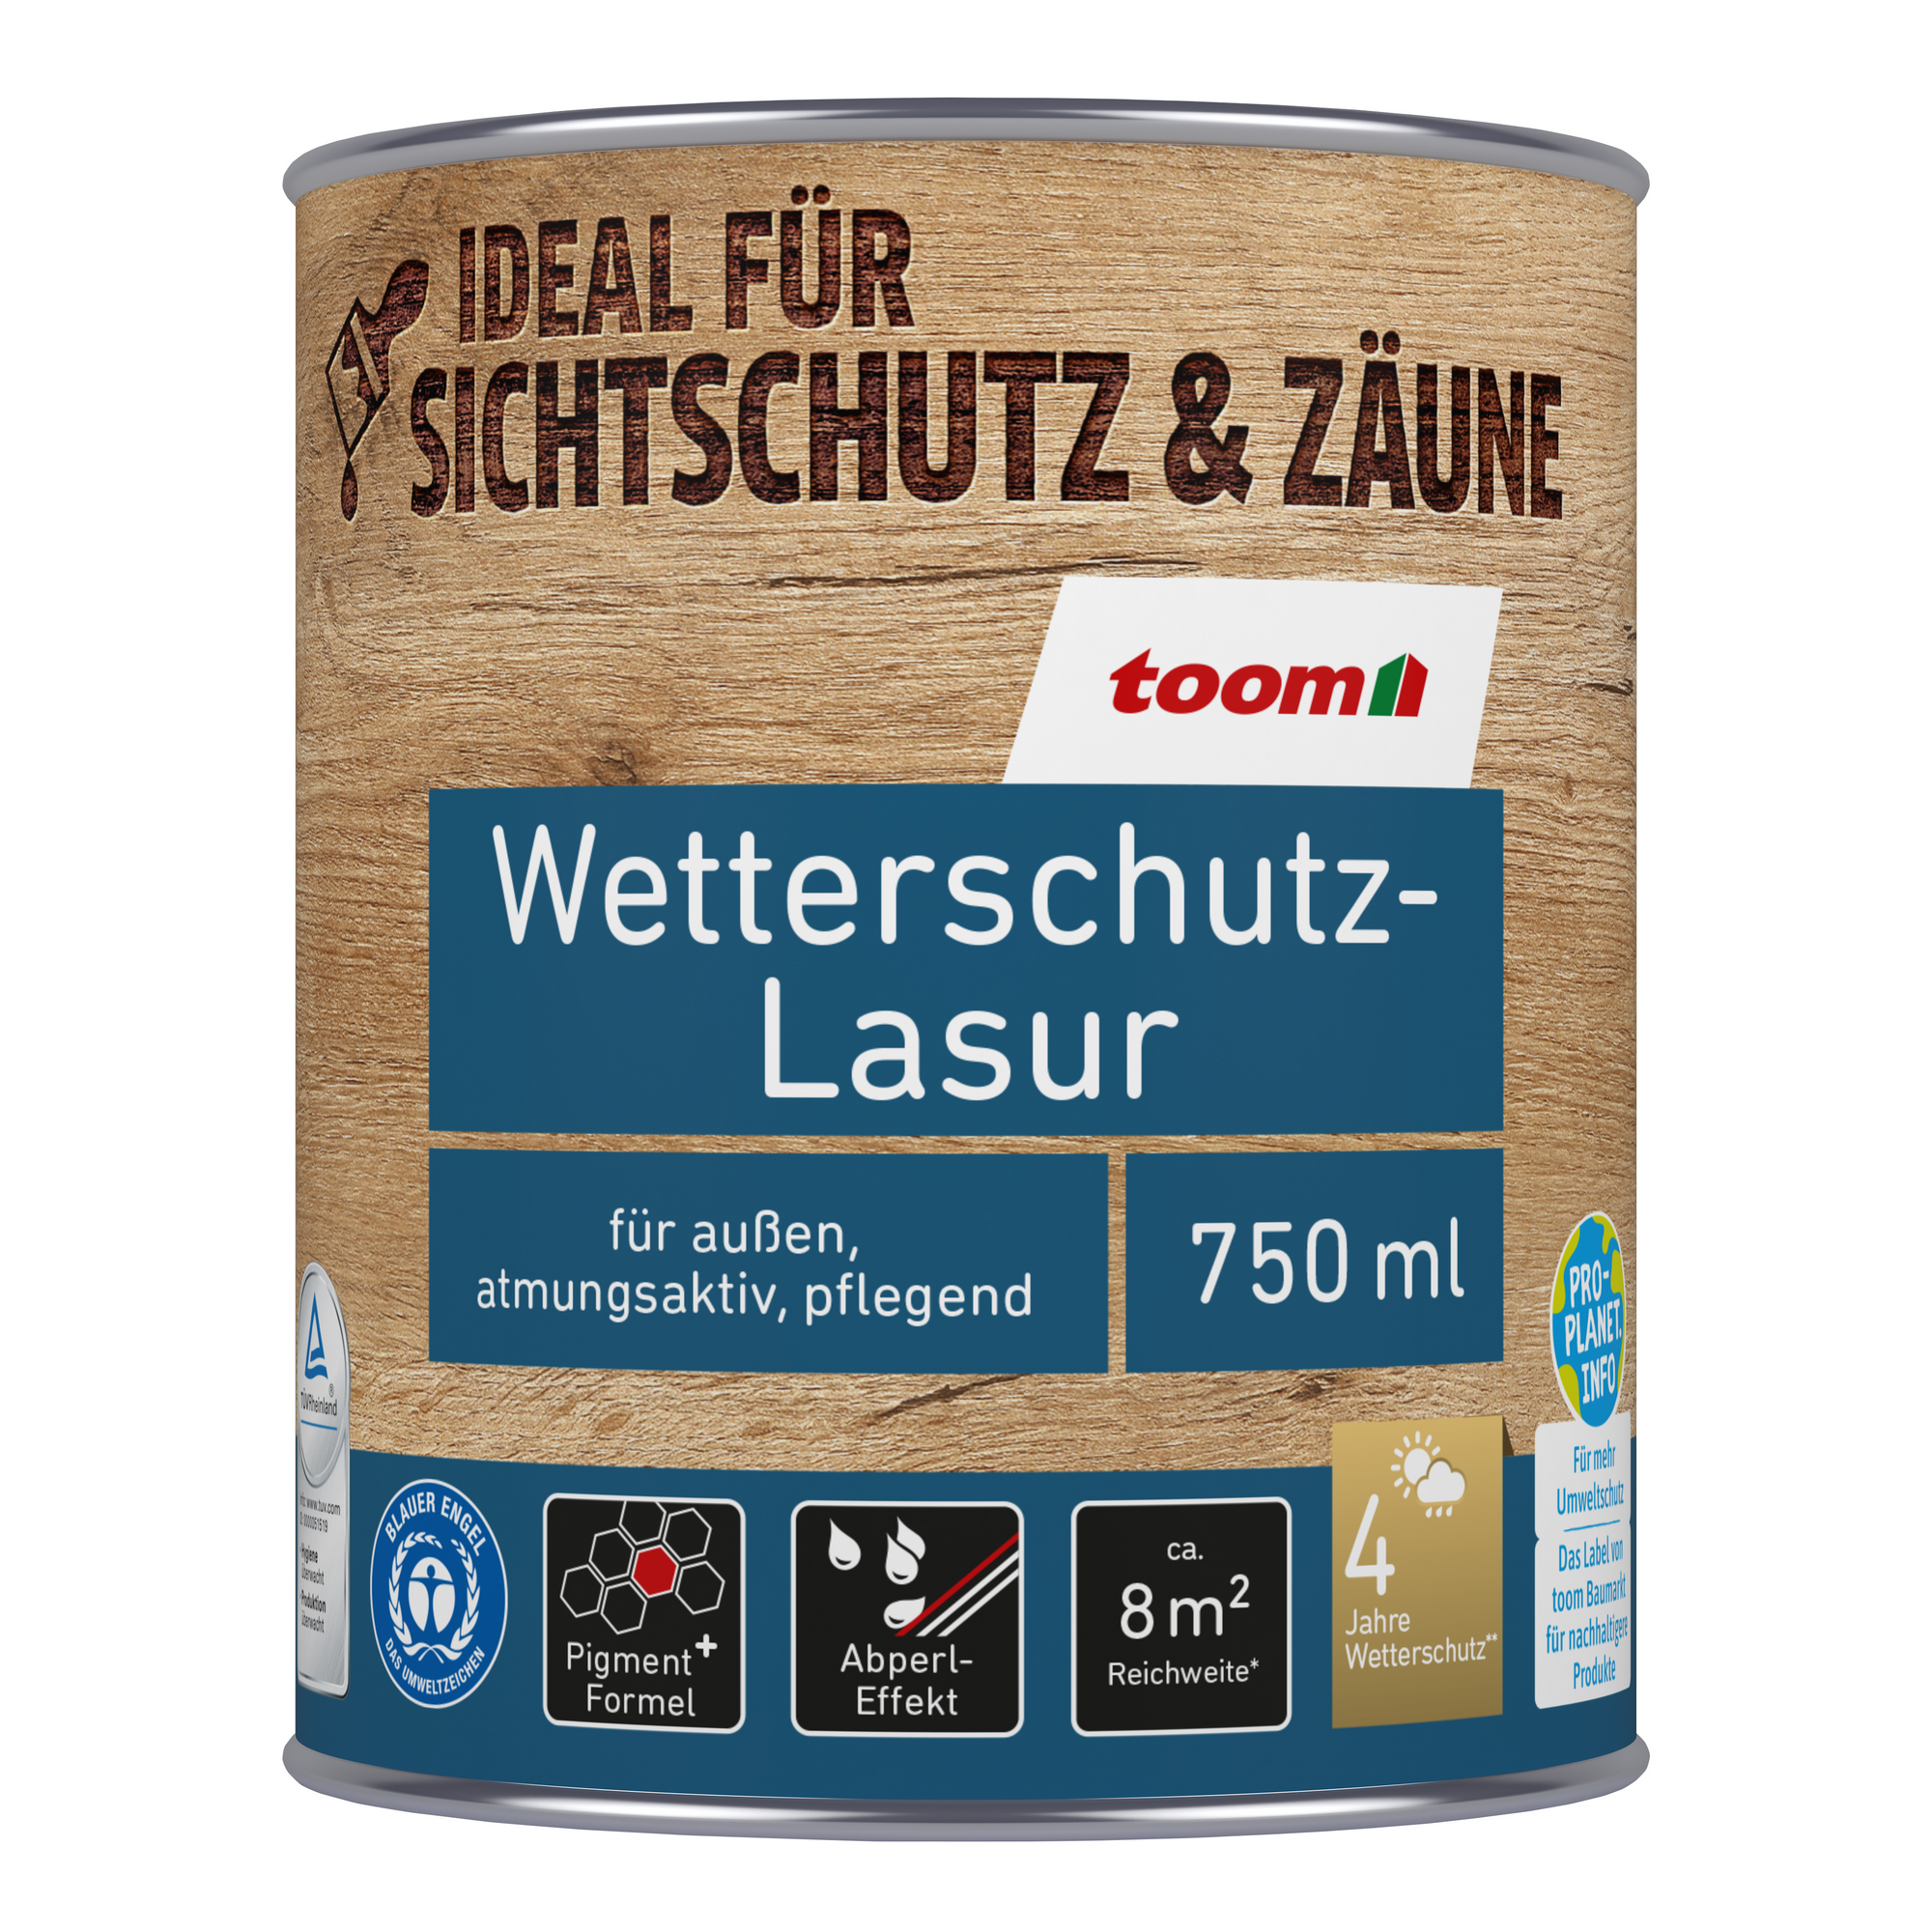 Wetterschutz-Lasur nussbaumfarben 750 ml + product picture